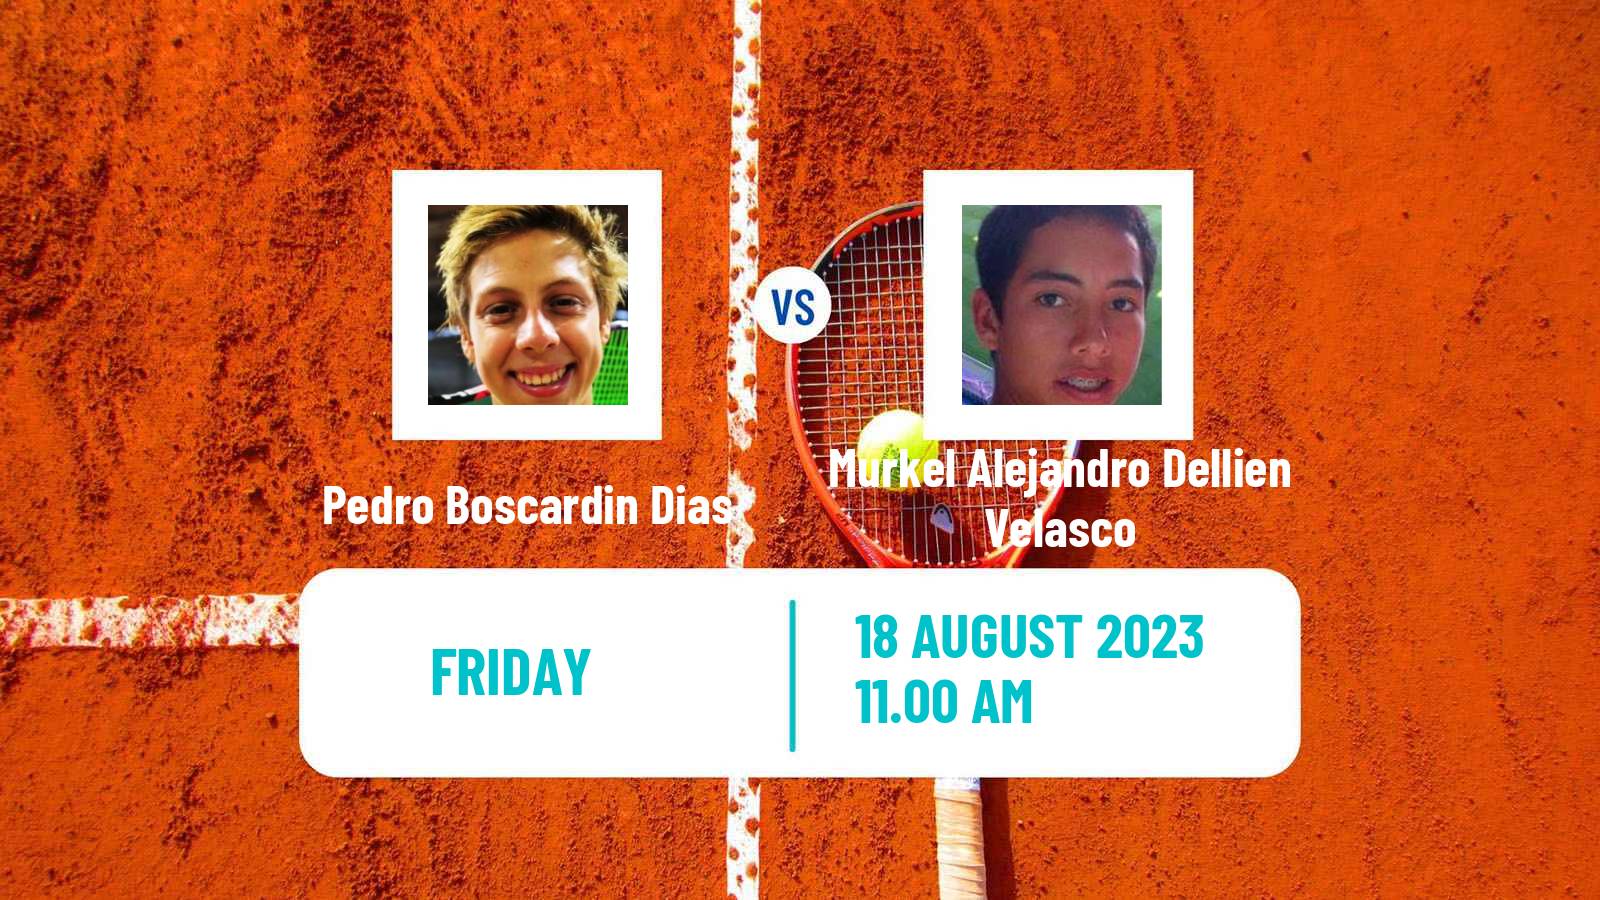 Tennis ITF M25 Trujillo Men Pedro Boscardin Dias - Murkel Alejandro Dellien Velasco